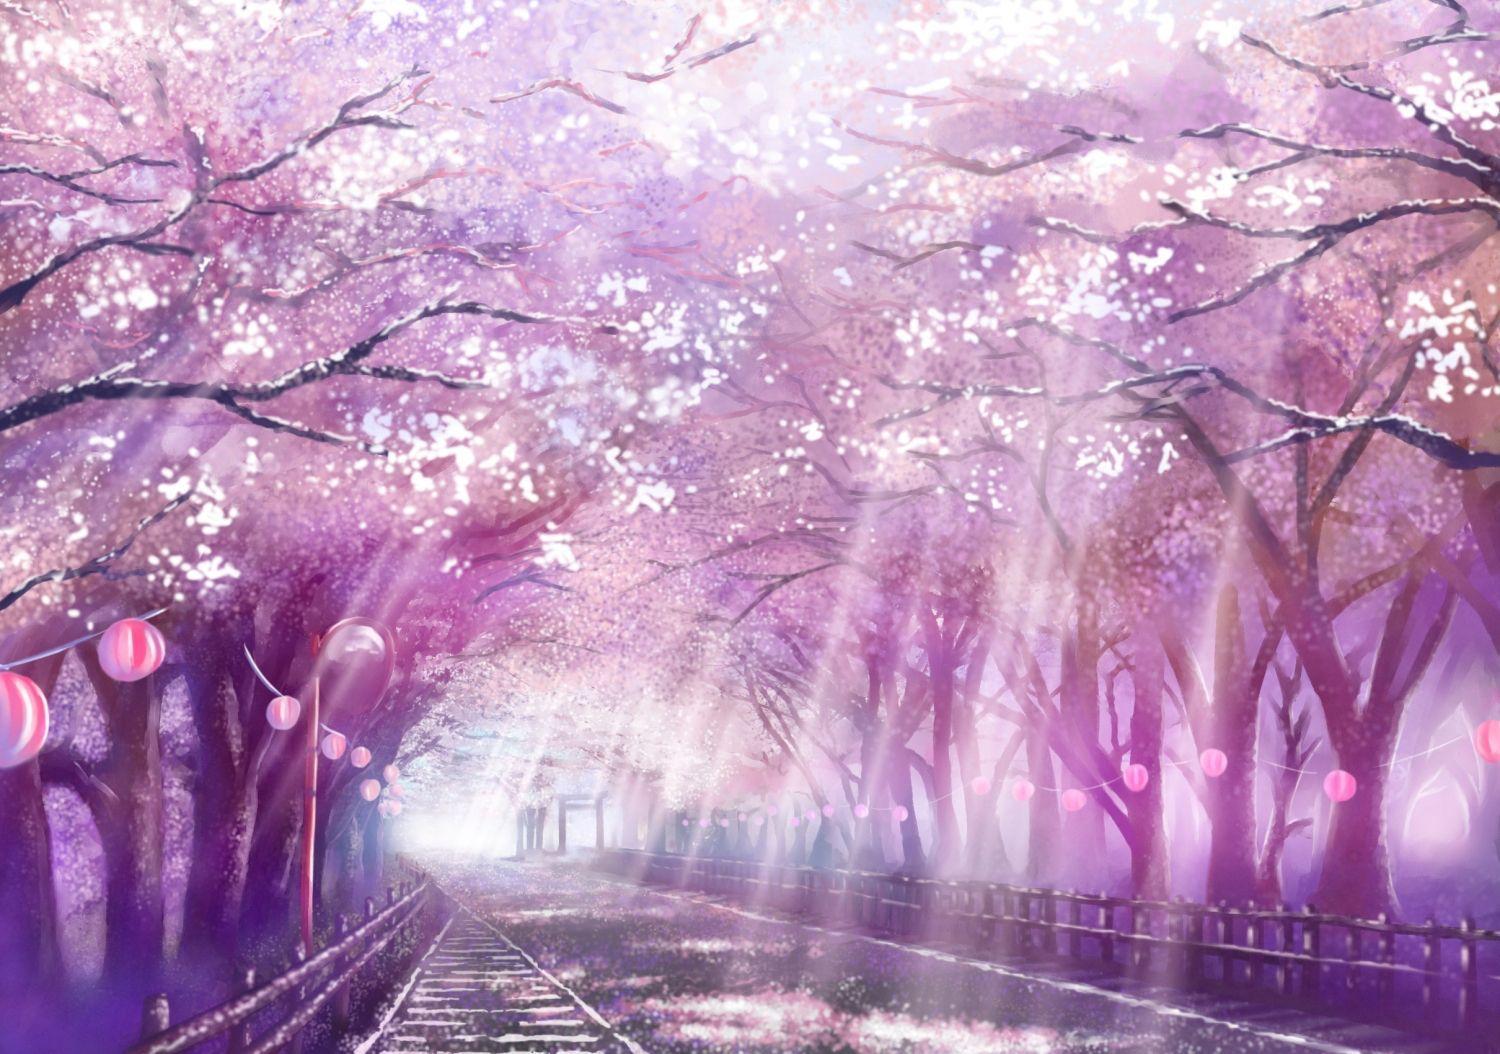 Sự kết hợp giữa anime và hoa anh đào đã tạo nên những tác phẩm nghệ thuật tuyệt vời. Hình ảnh đầy màu sắc của cây sakura và nhân vật anime sẽ làm cho bạn không thể rời mắt. Tải ngay hình nền này và hòa mình vào thế giới đầy mơ mộng của anime.